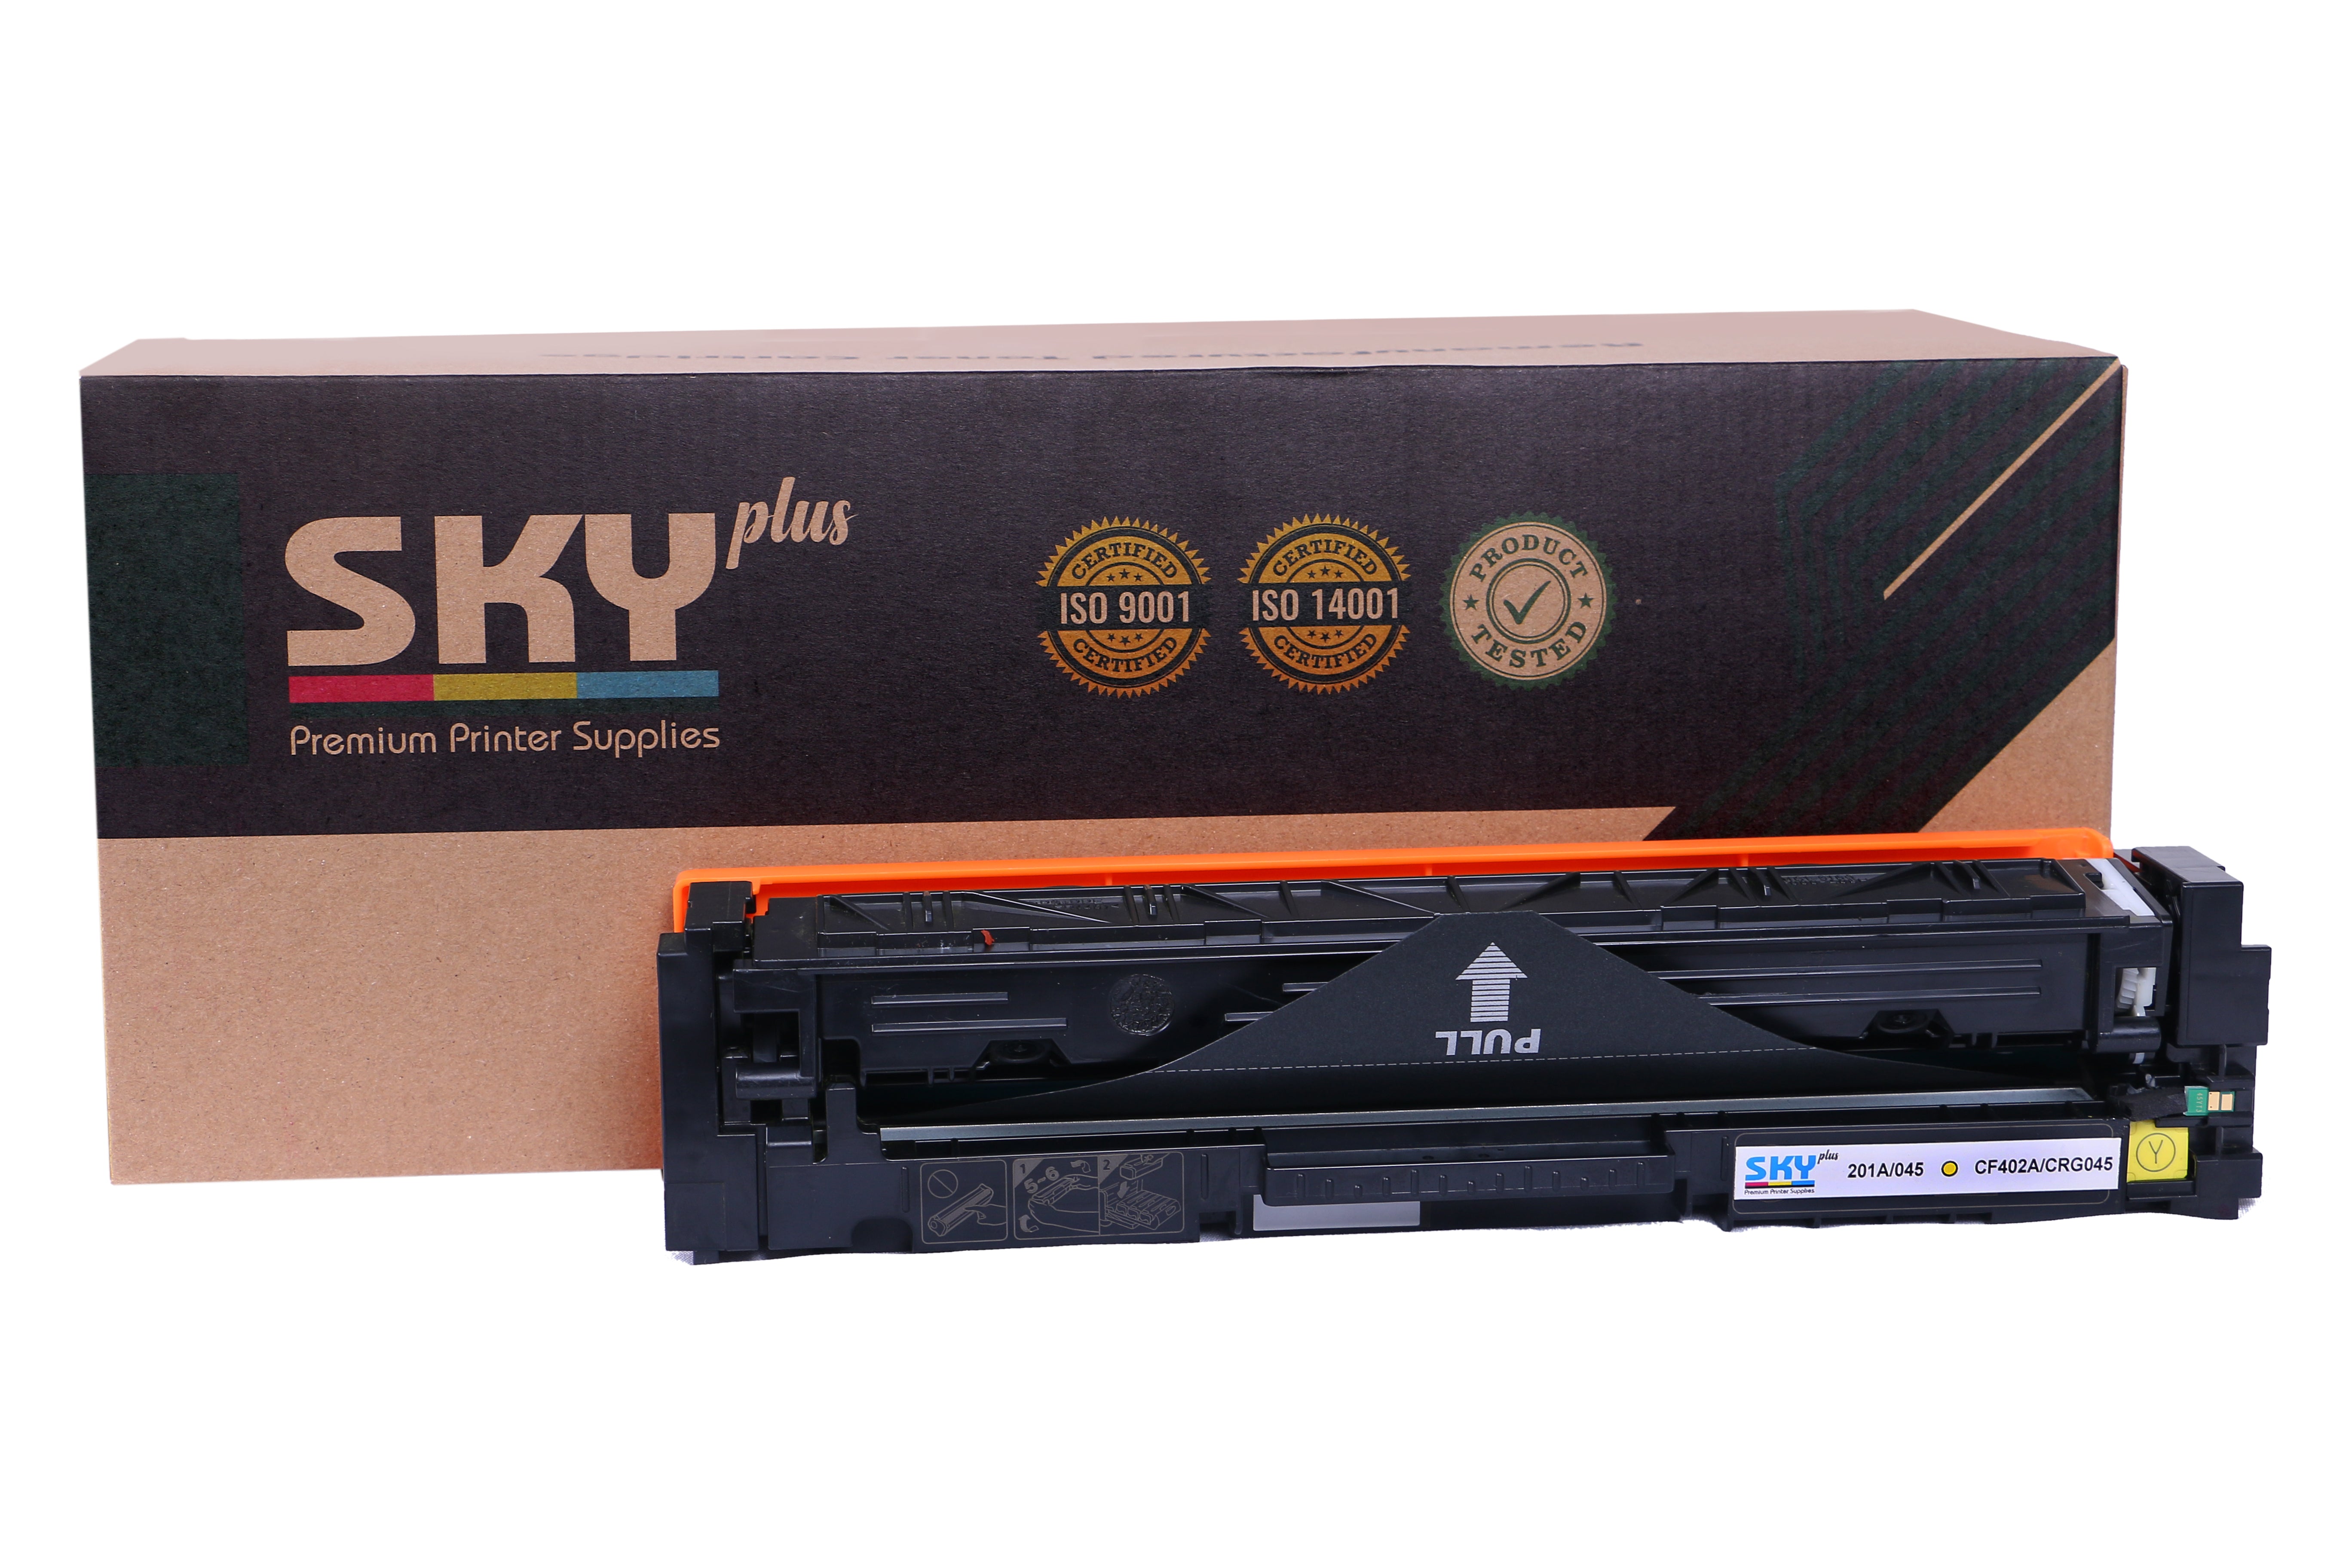 SKY Plus   201A  Remanufactured Toner Cartridges for HP Colour LaserJet Pro M252, M274 and M277